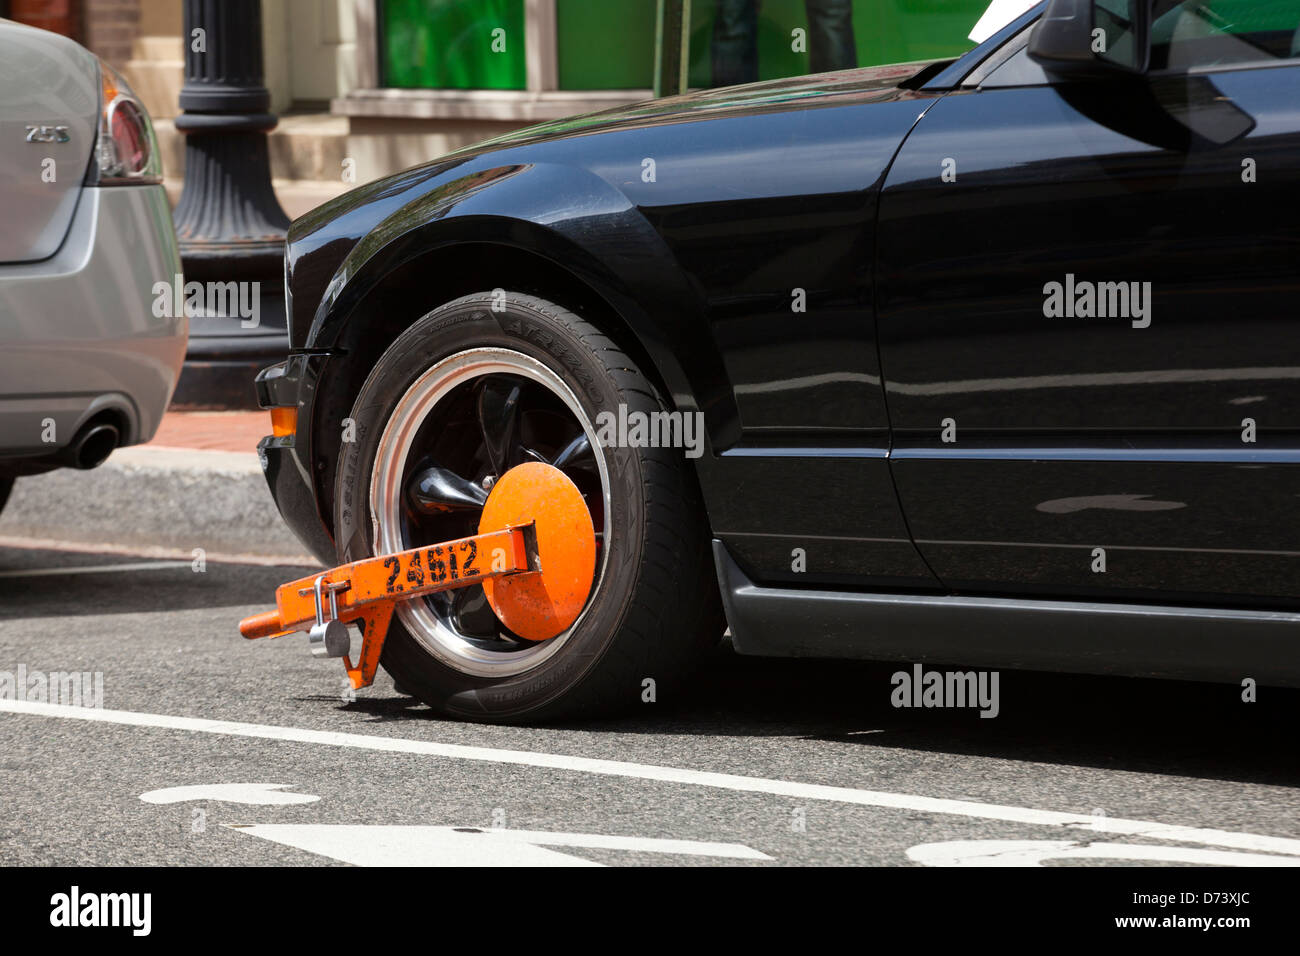 Le blocage des roues - Roue avant voiture USA Banque D'Images